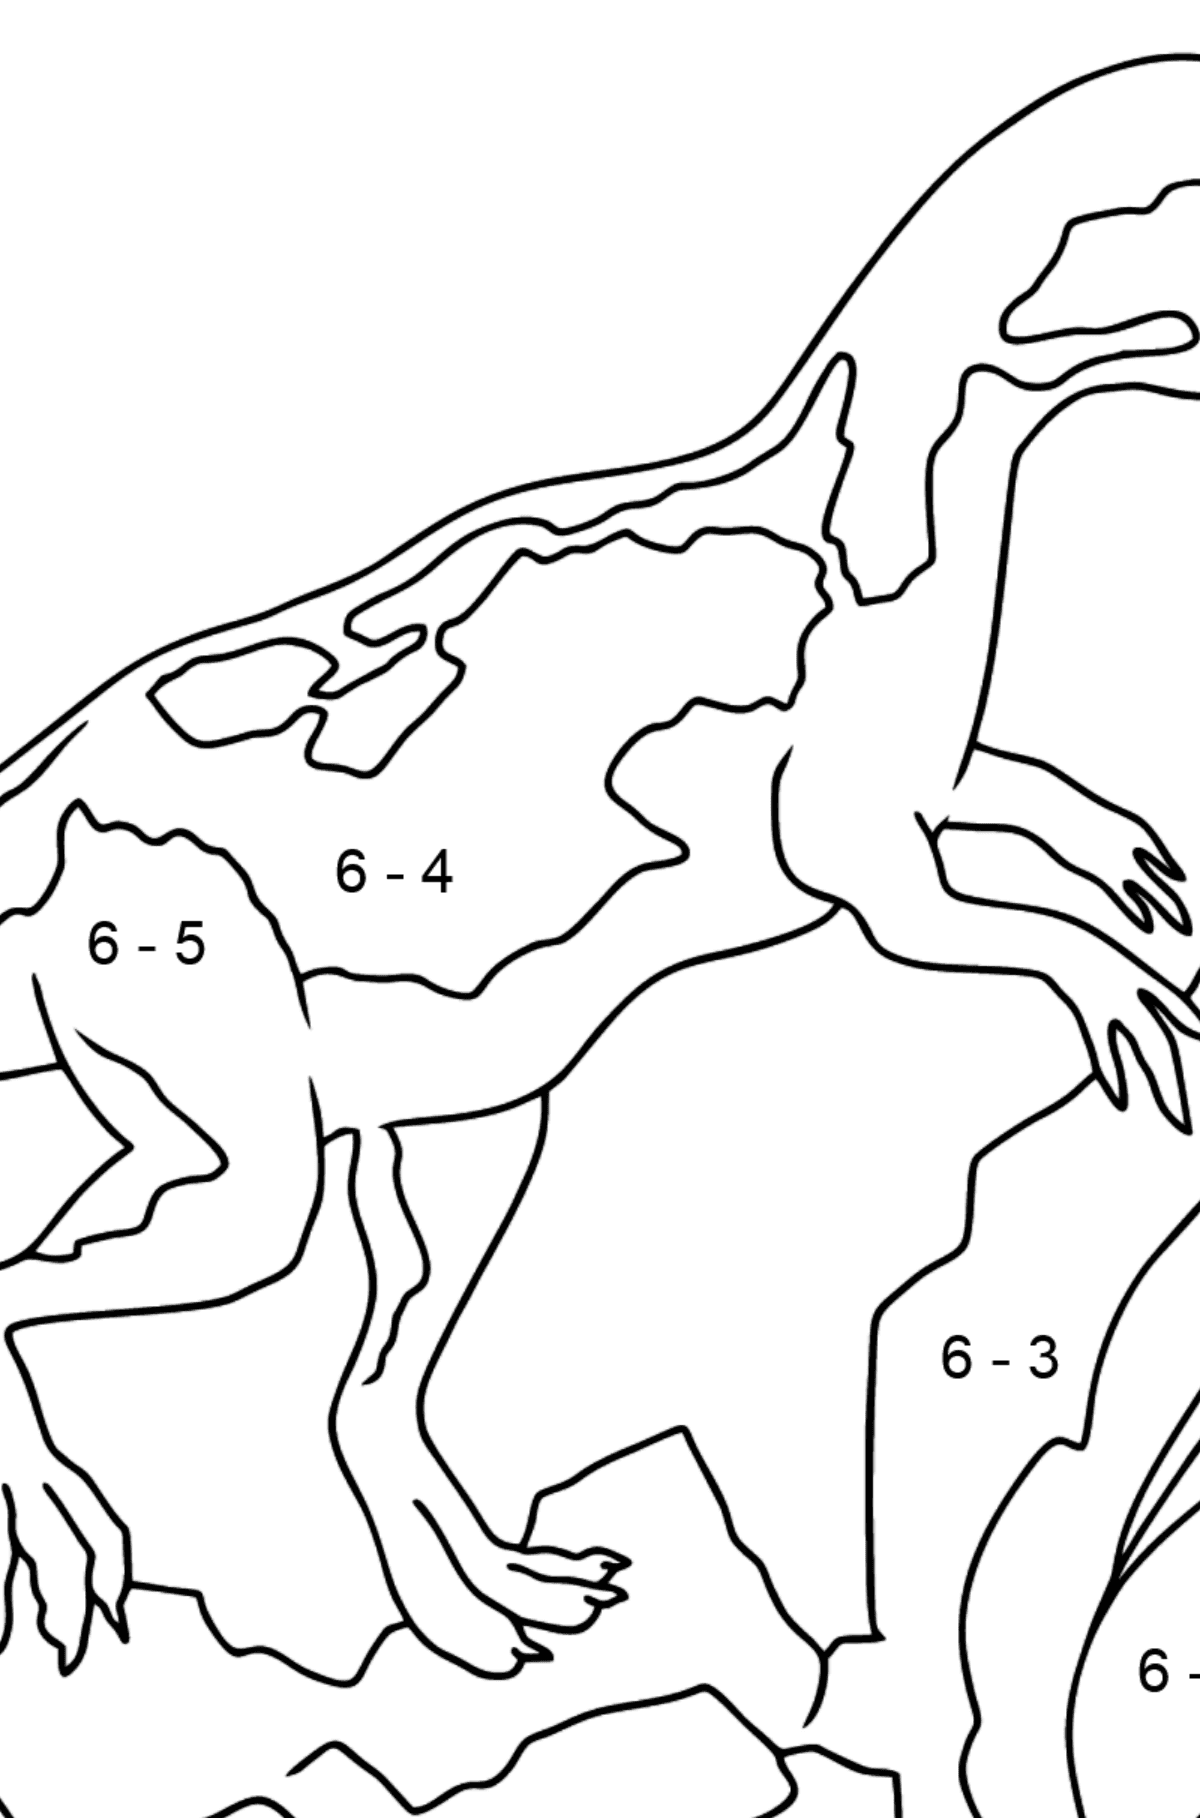 Desenho para colorir de dinossauro jurássico (fácil) - Colorindo com Matemática - Subtração para Crianças